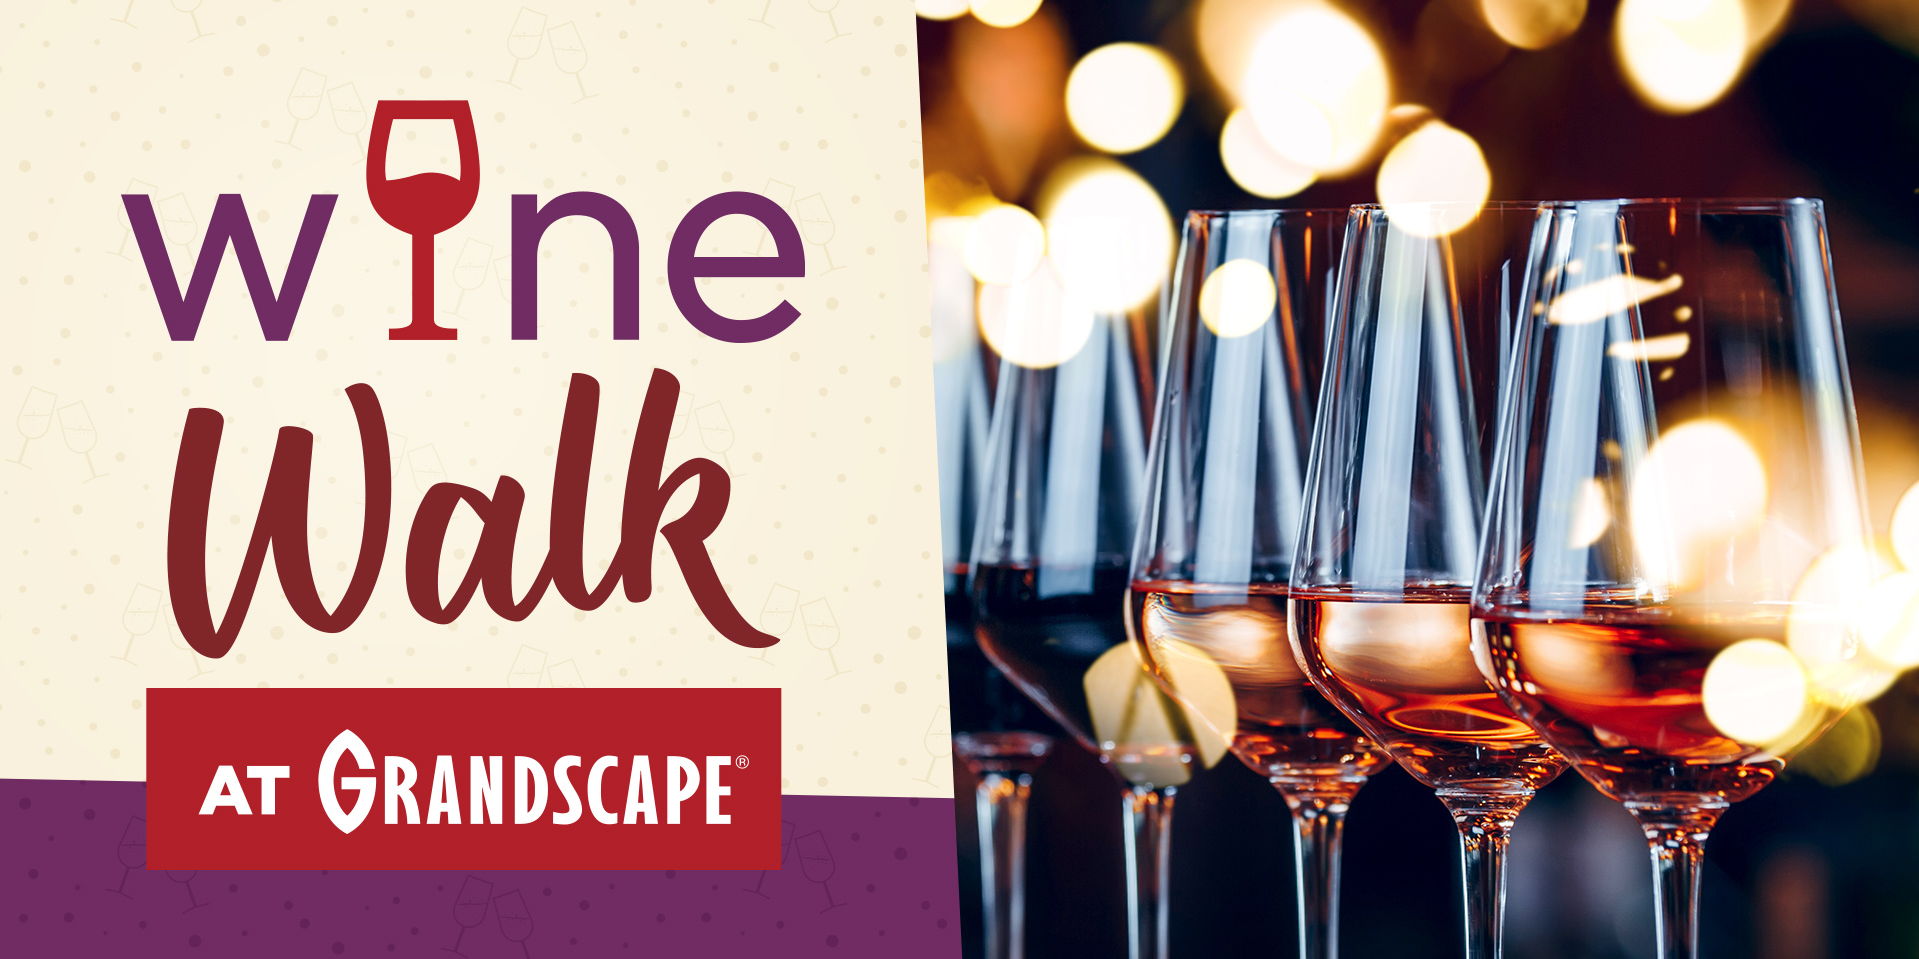 Wine Walk promotional image